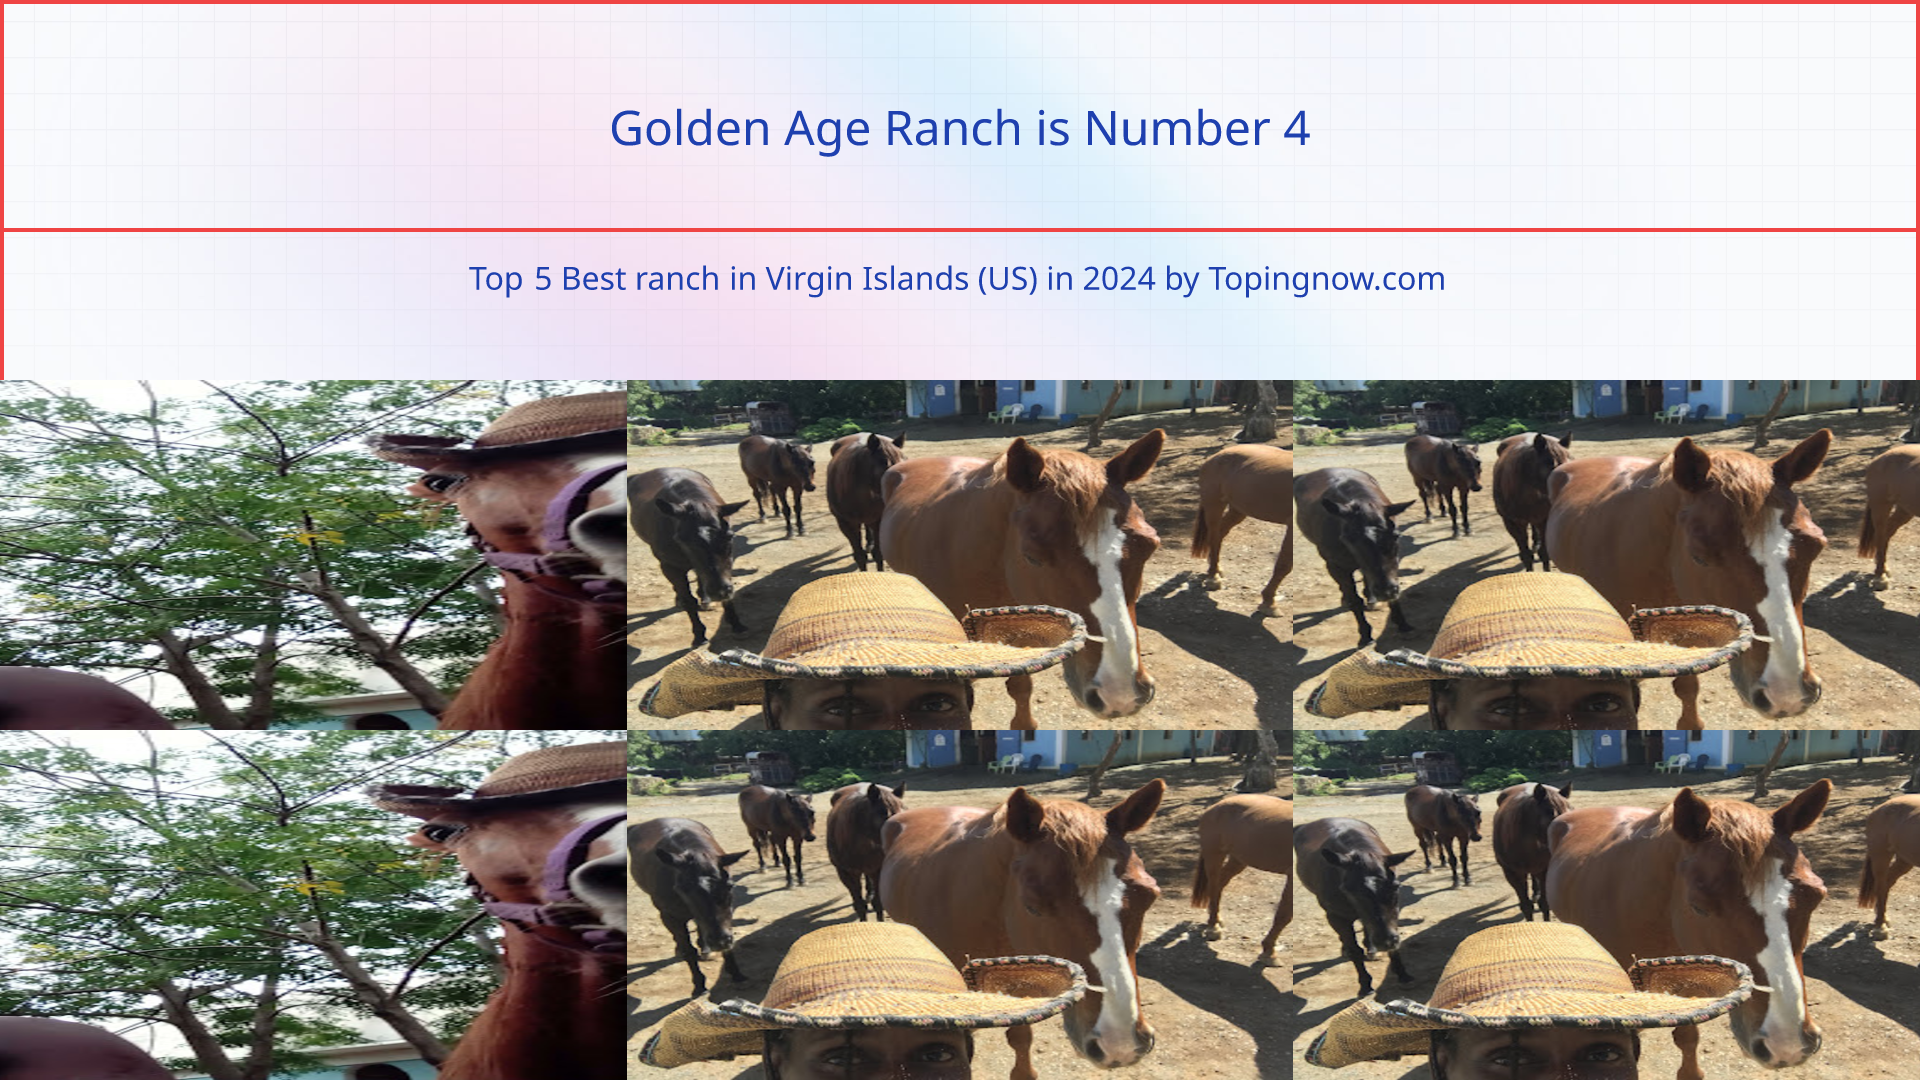 Golden Age Ranch: Top 5 Best ranch in Virgin Islands (US) in 2024